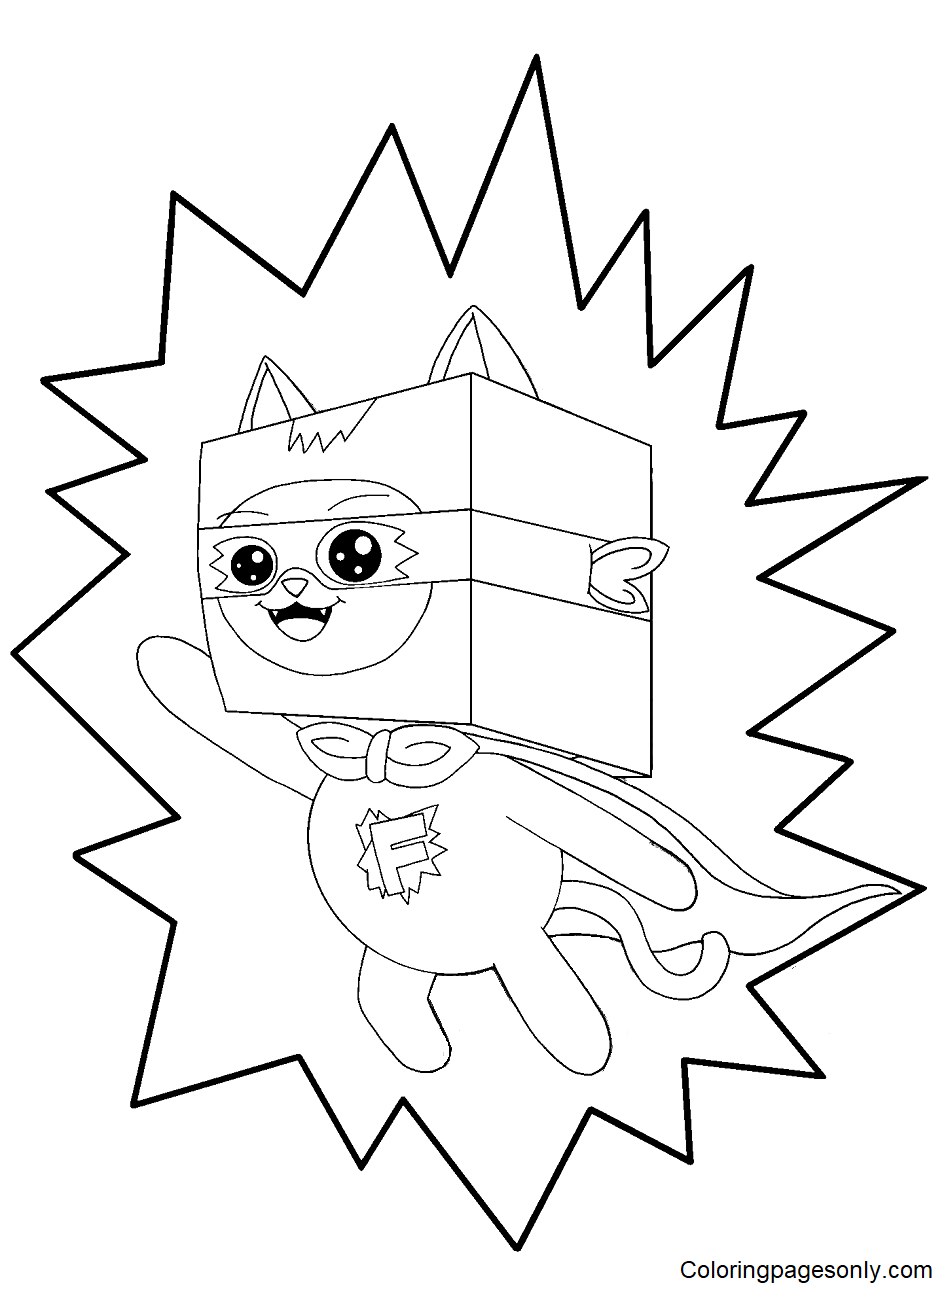 Super Foxy da LankyBox